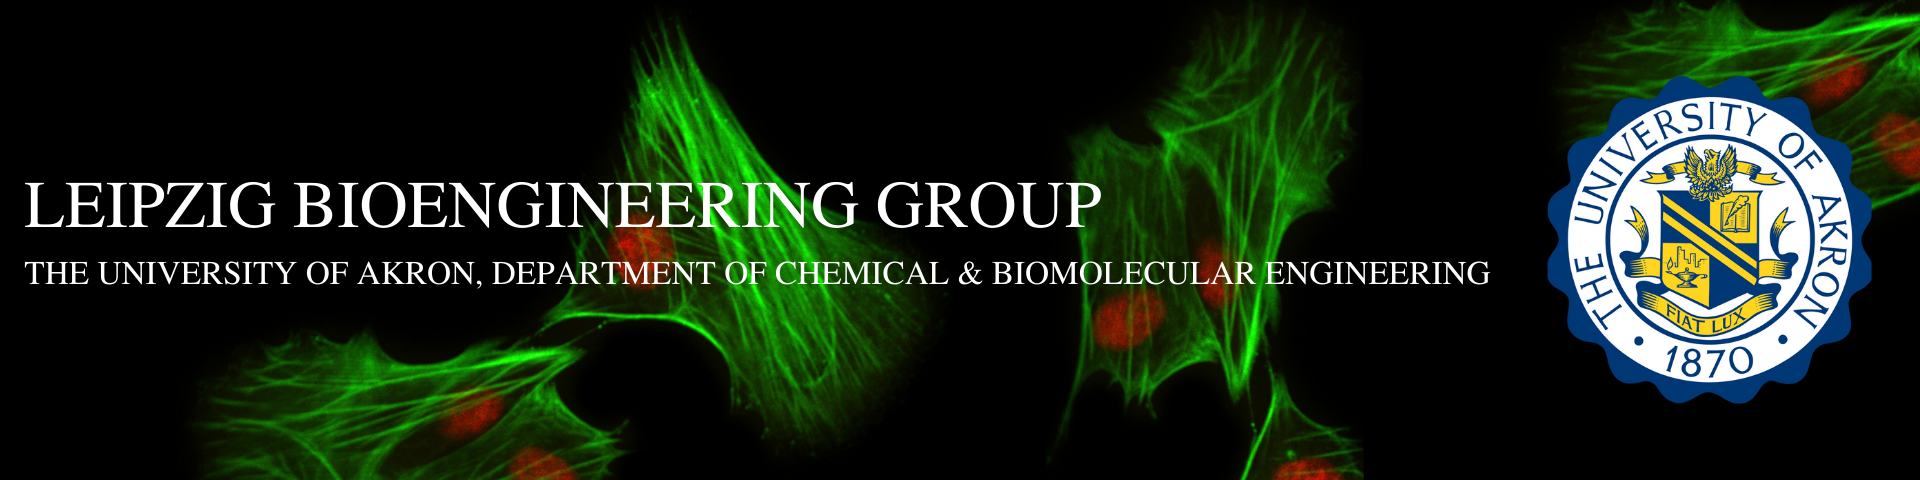 Leipzig Bioengineering Group